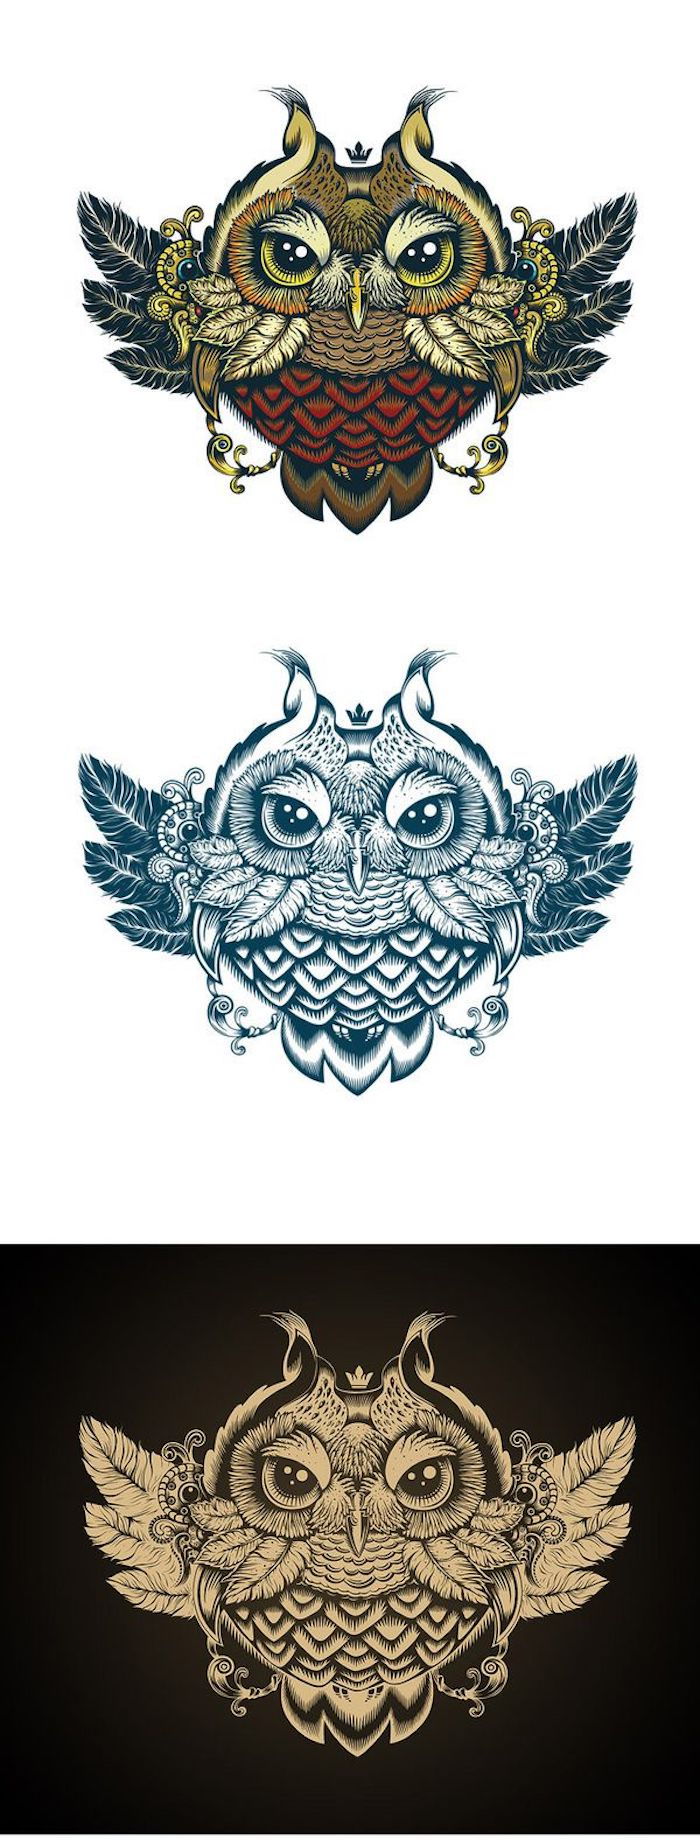 Iată trei mari idei pentru tatuajele owl - o bufniță galbenă, albastră și colorată